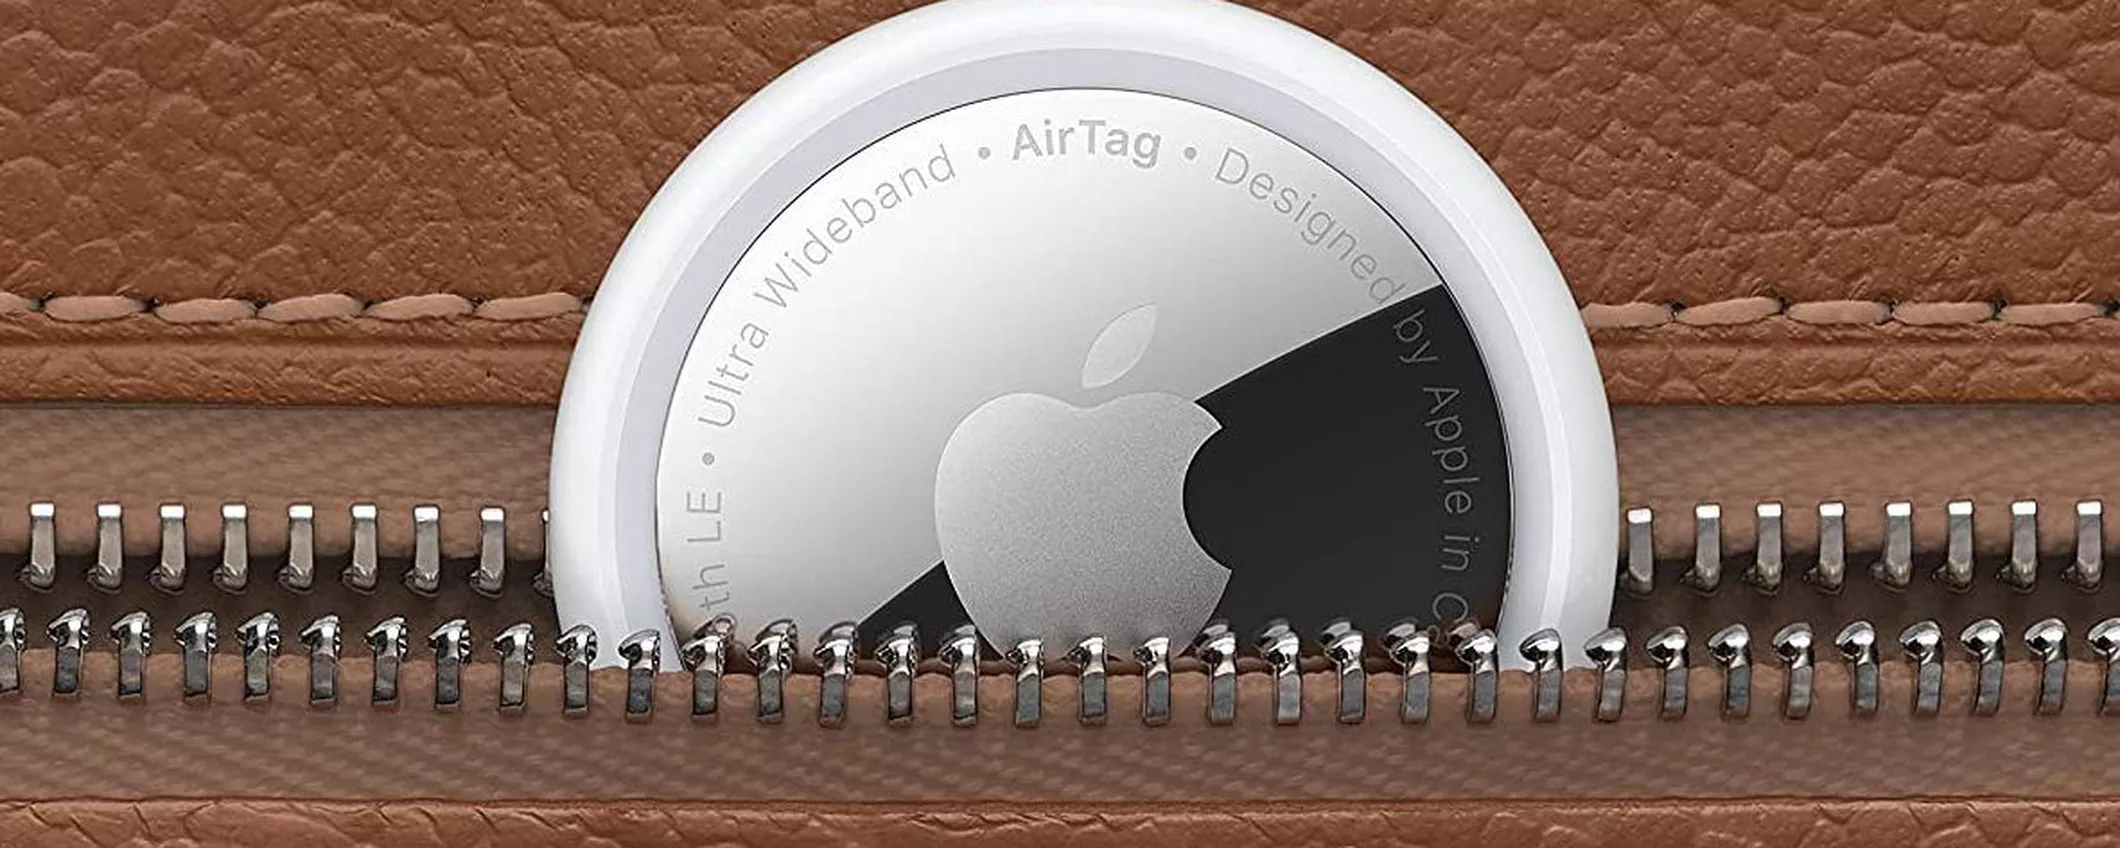 Apple AirTag, ora puoi farne scorta: su Amazon sono super scontati